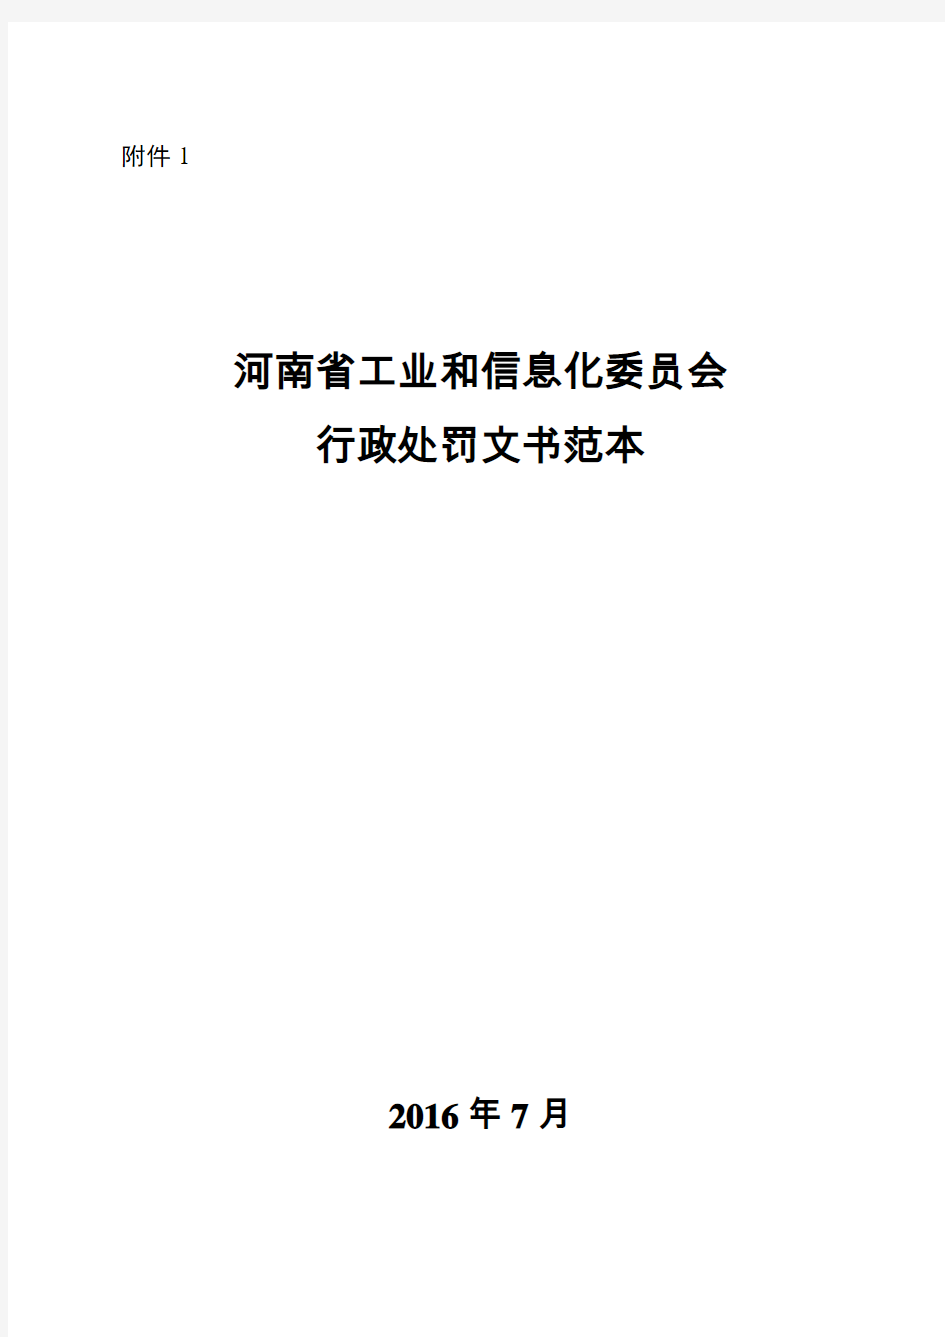 行政处罚文书格式范本 - 河南省工业和信息化会